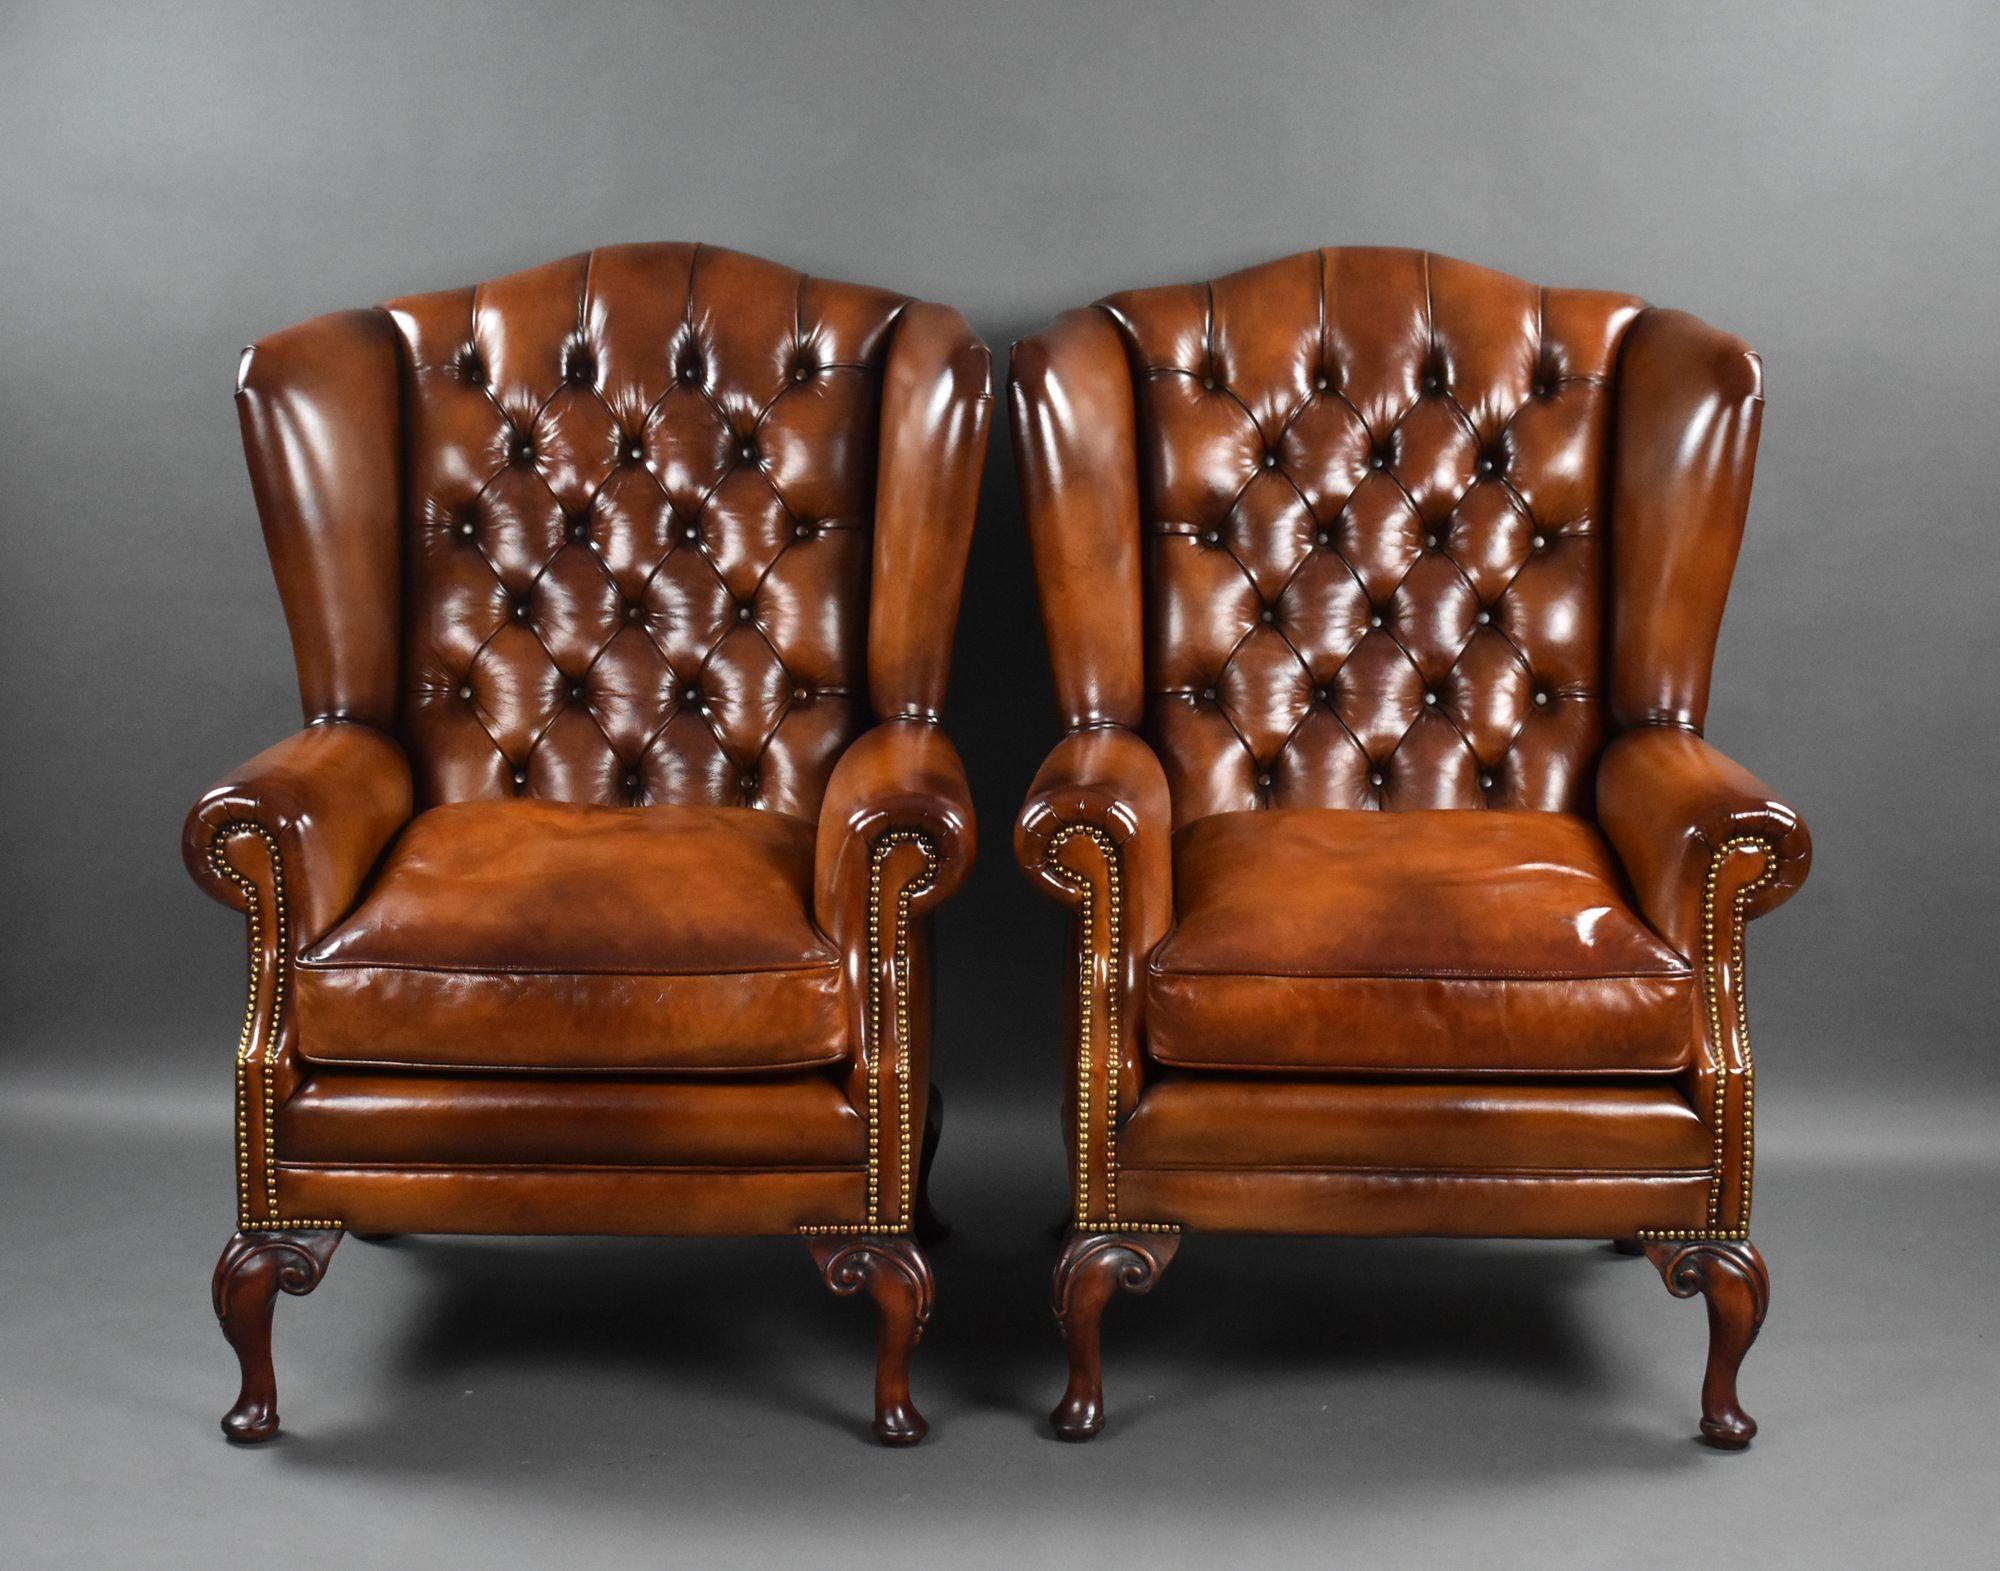 Il s'agit d'une paire de fauteuils anciens à dossier en cuir teint à la main, de bonne qualité, chacun avec un dossier profondément boutonné et des sièges garnis de plumes. Les fauteuils reposent sur d'élégants pieds cabriole à l'avant, et sur des